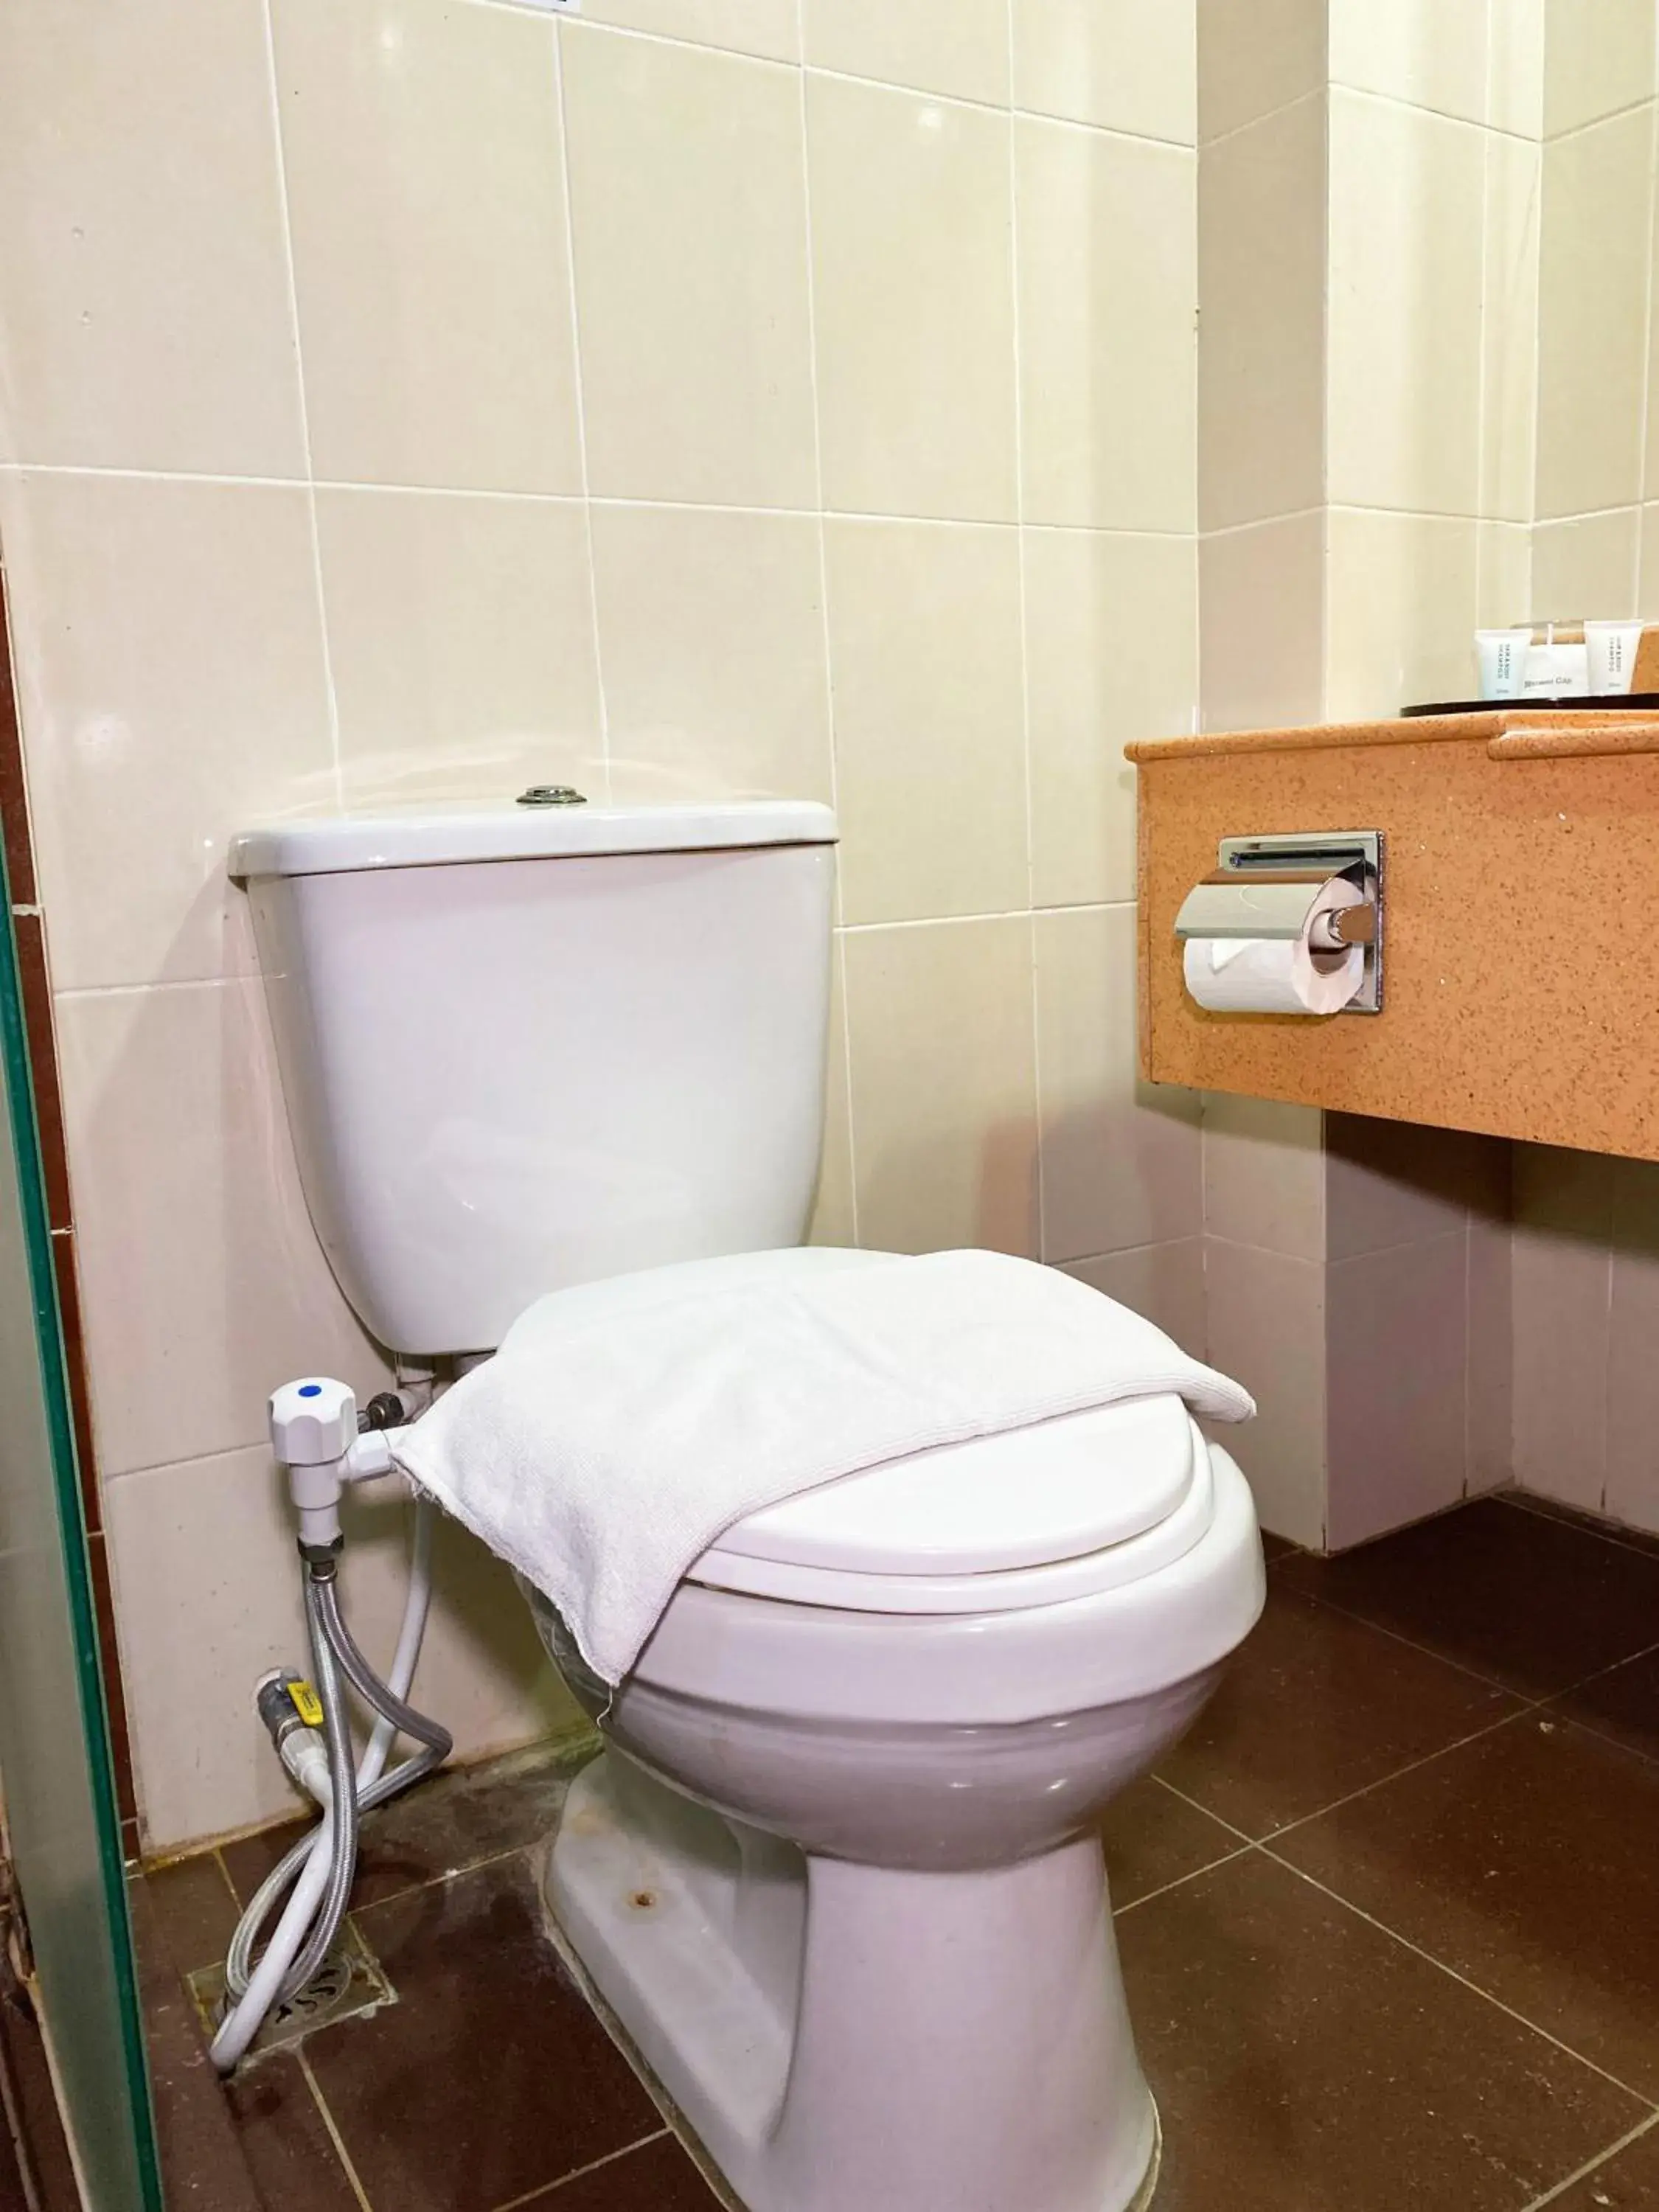 Area and facilities, Bathroom in Hotel Sandakan